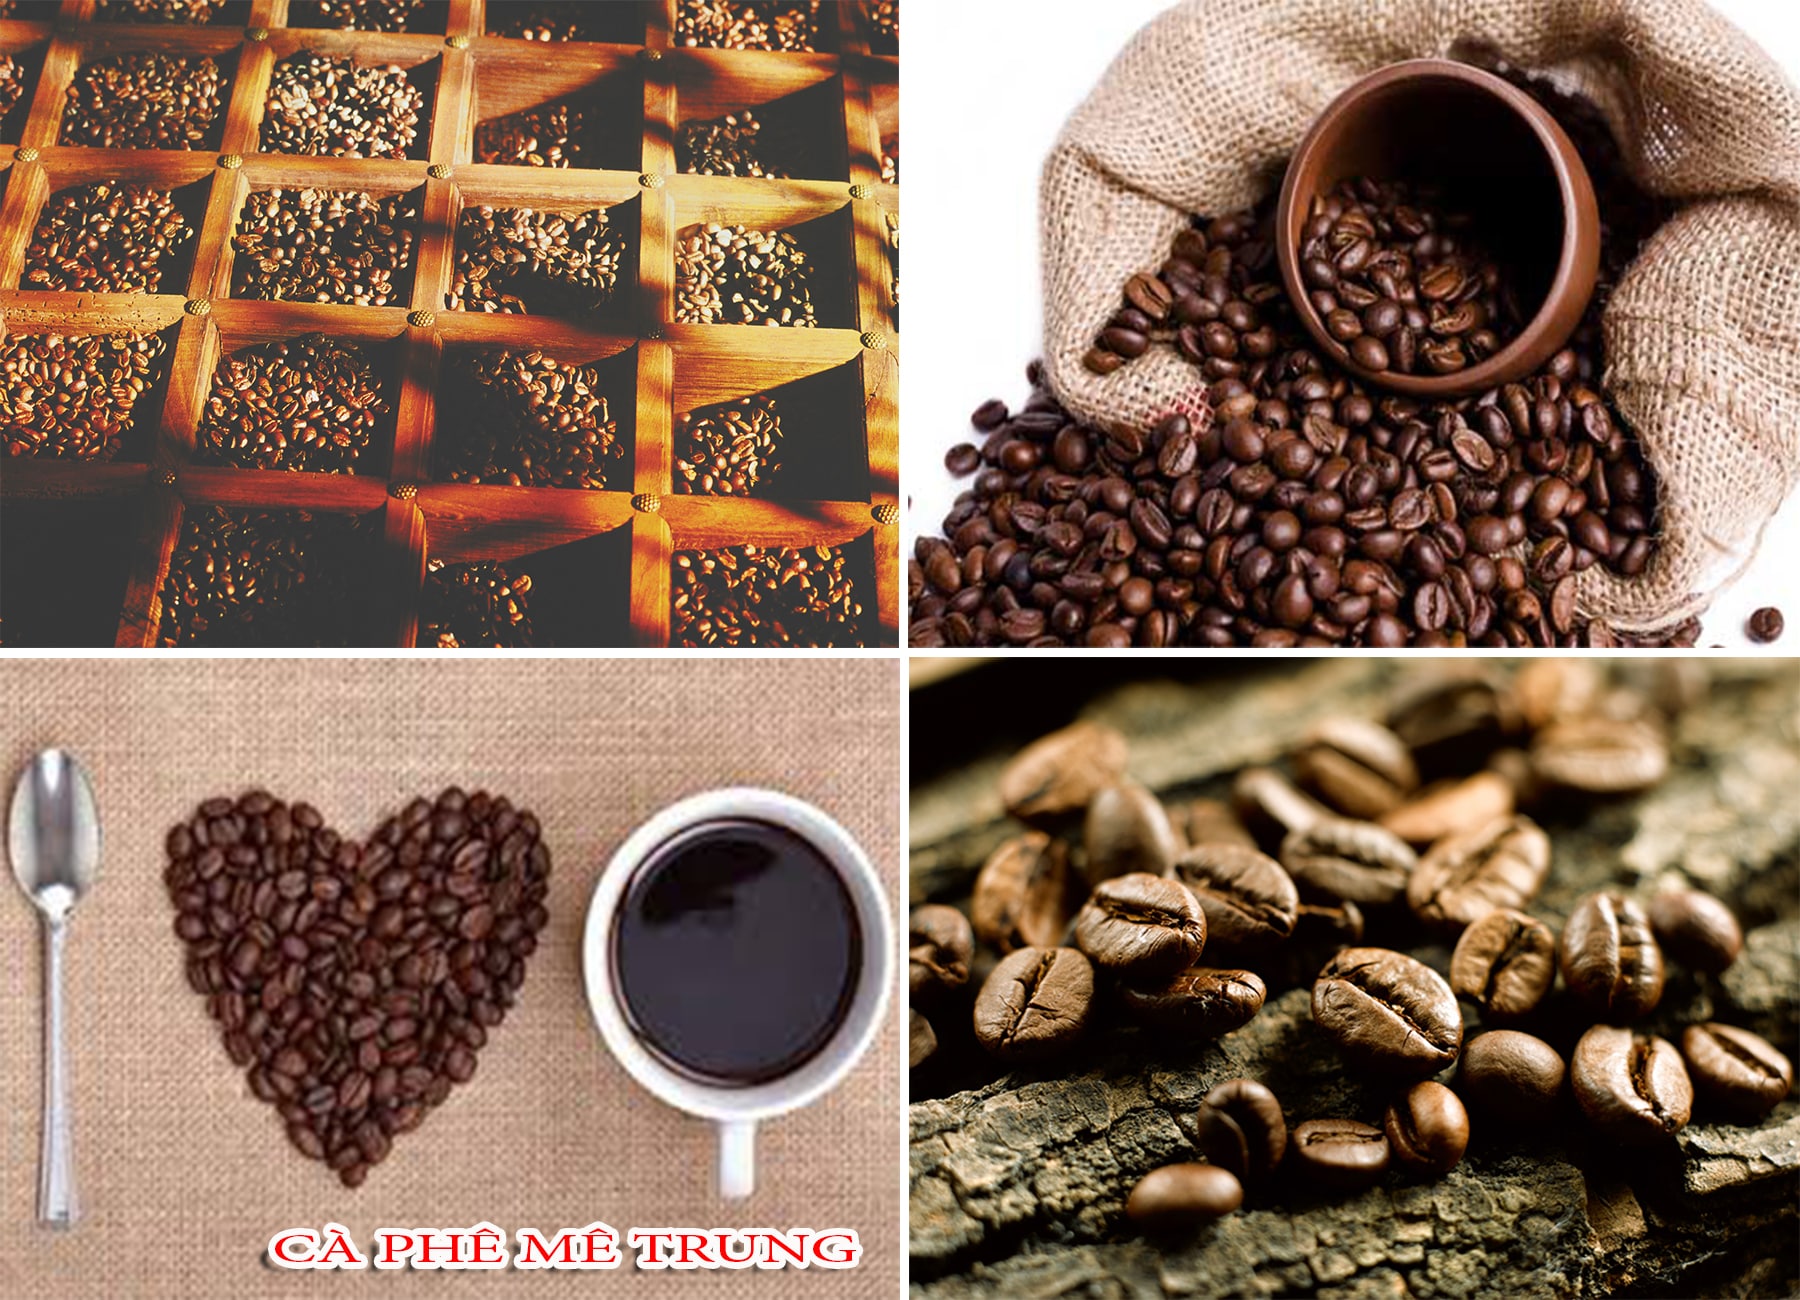 Cà phê rang xay nguyên chất ngon ngay từ nguồn nguyên liệu